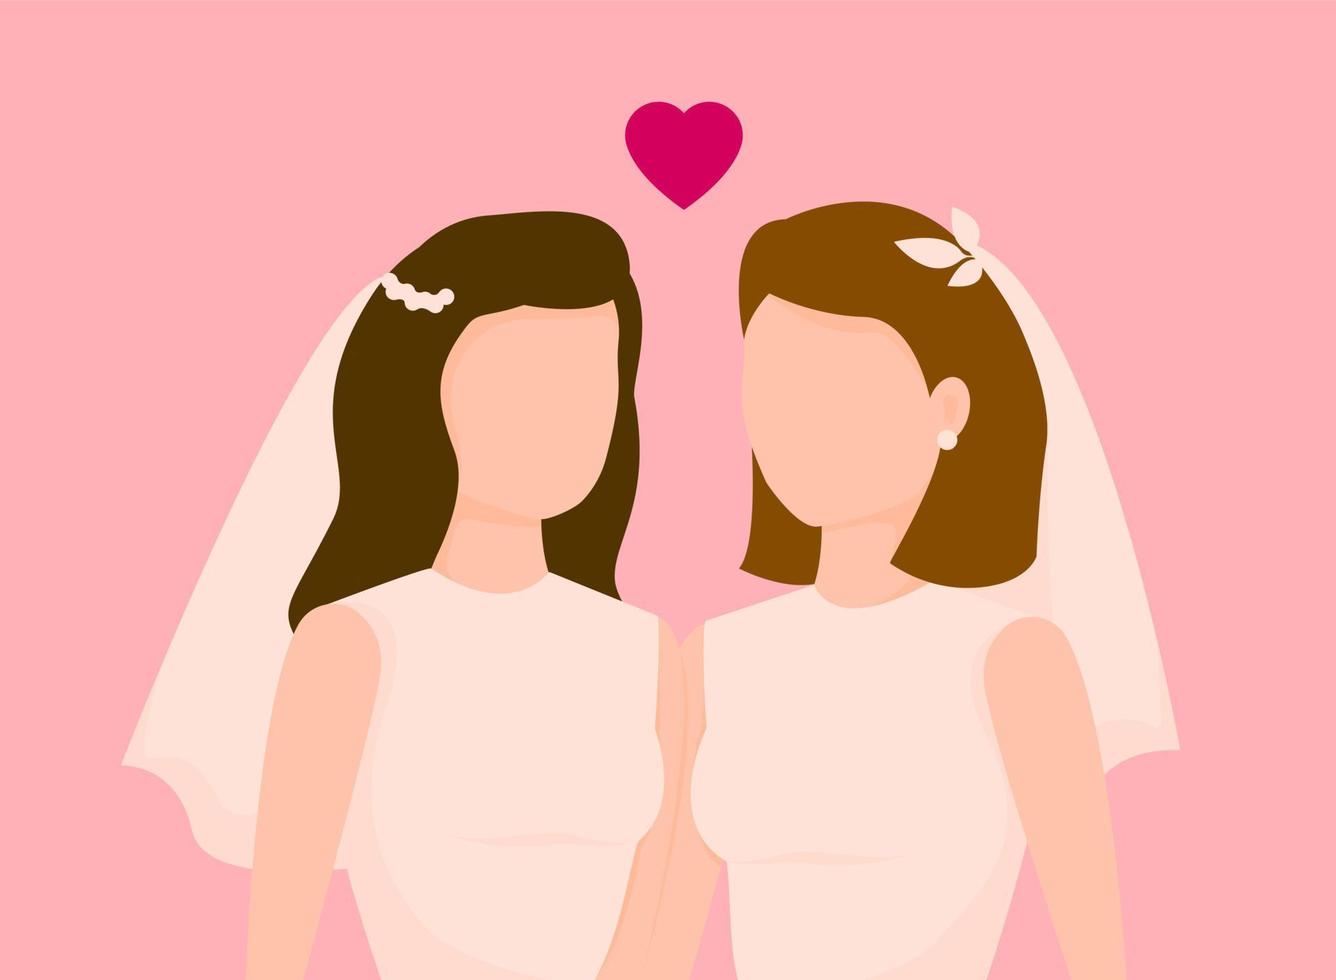 boda lgbt con dos mujeres gay vestidas de blanco aisladas de fondo rosa. ellos. vector